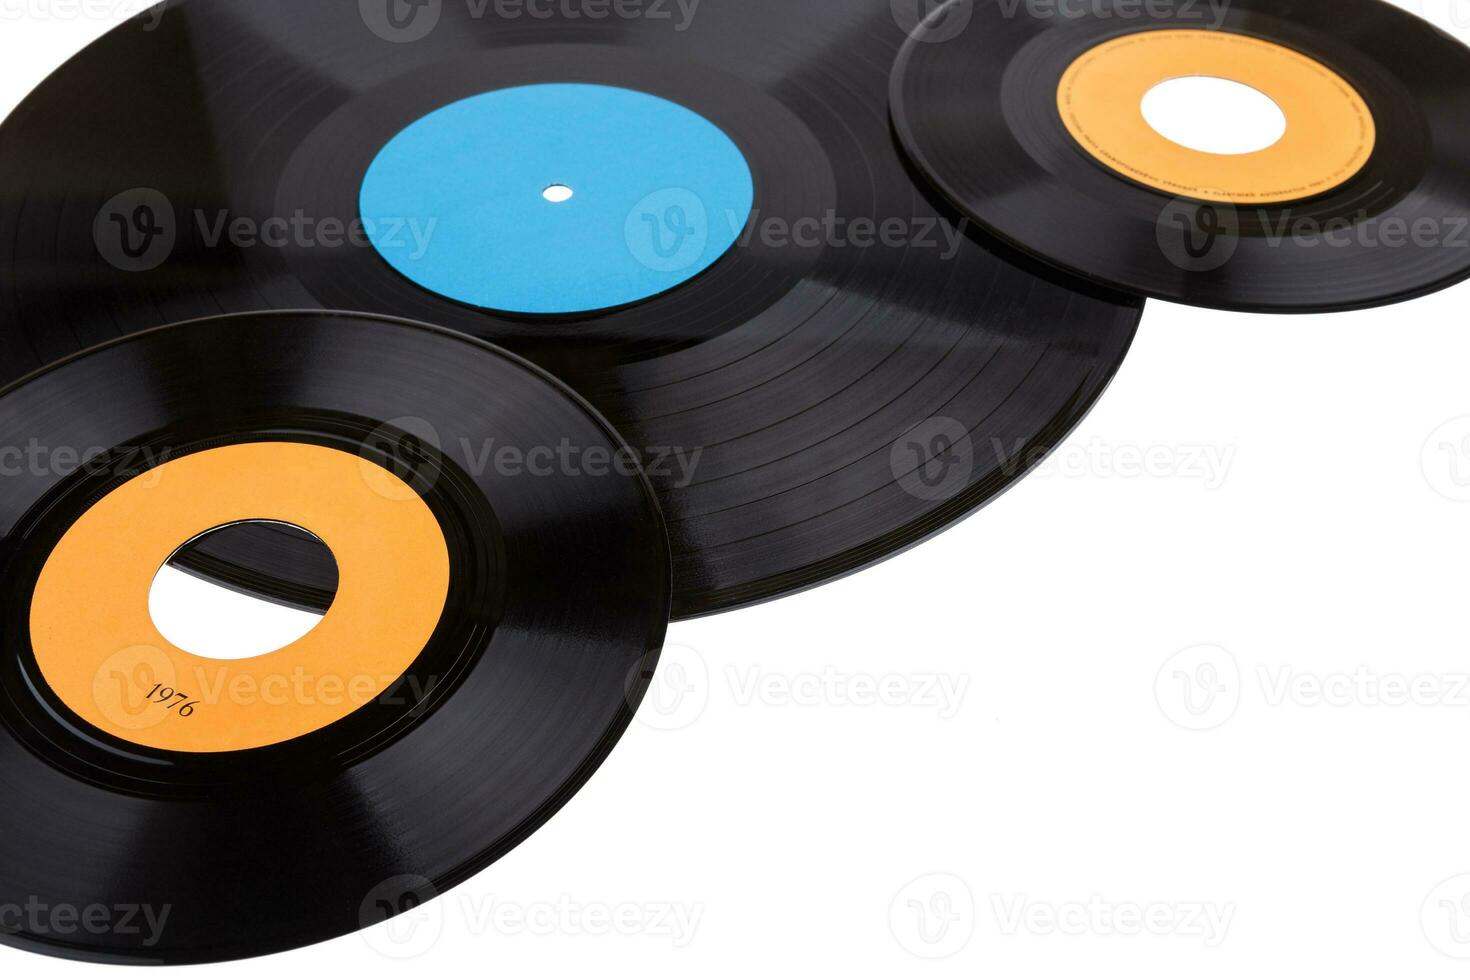 gammal grammofon vinyl uppgifter isolerat på vit bakgrund foto